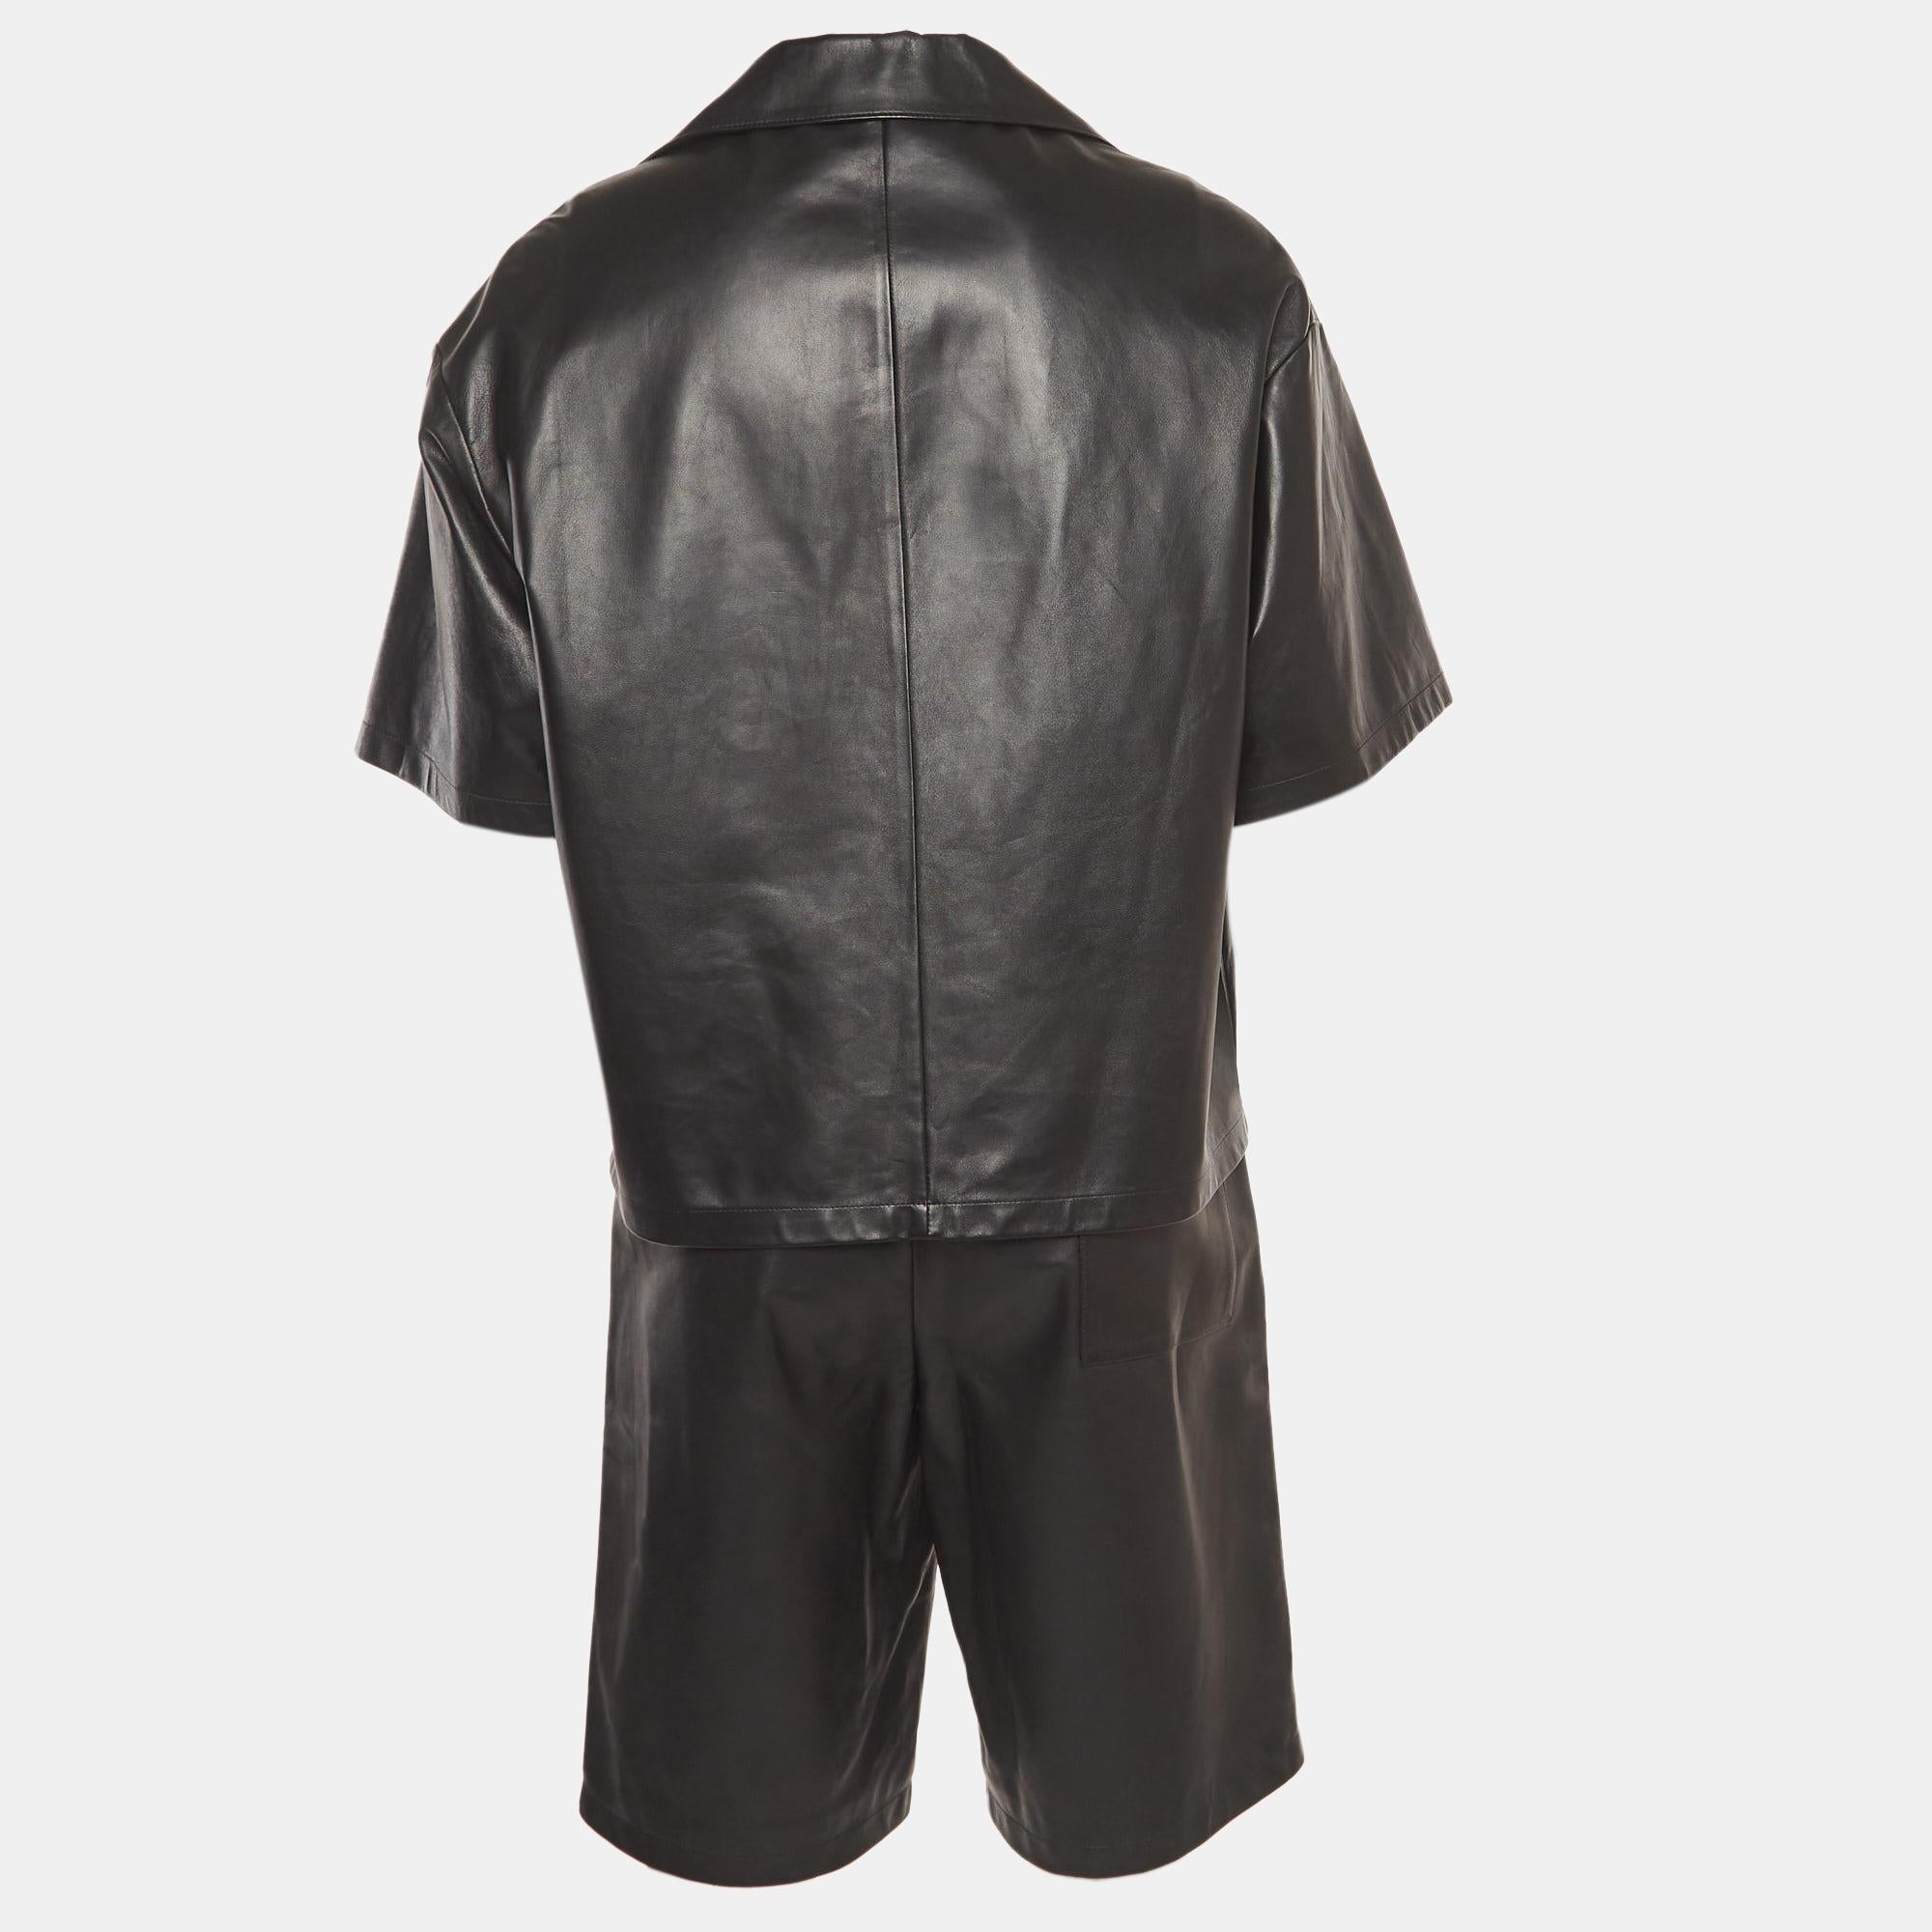 Cet ensemble de shorts et de chemises Prada se caractérise par une coupe élégante, un cuir de haute qualité, un confort et un style durables. L'ensemble est de couleur noire et le col de la chemise porte le logo triangulaire de la marque.

